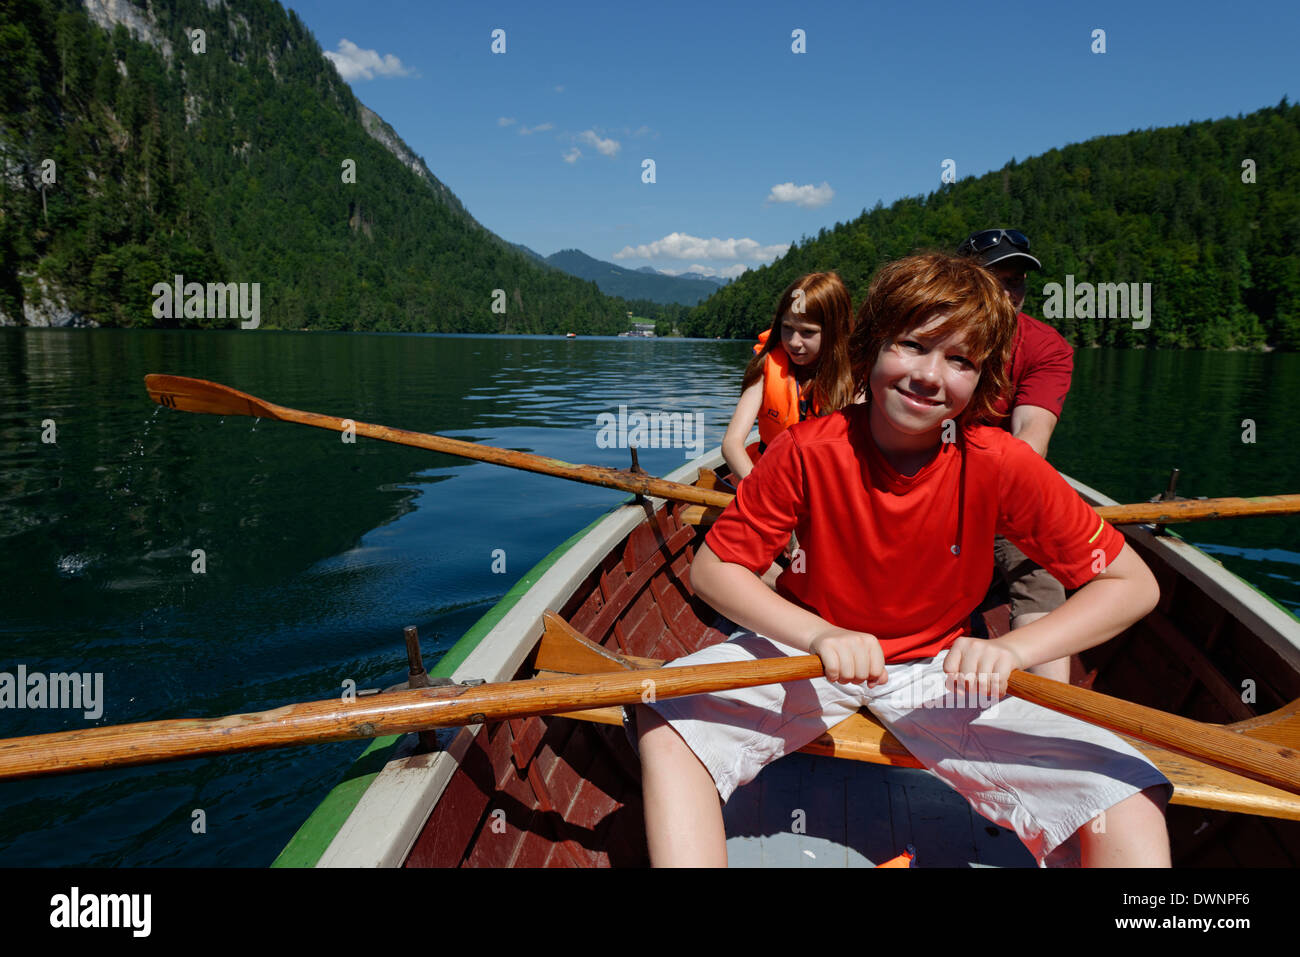 Los niños en un bote de remos en el lago Königssee, distrito de Berchtesgadener Land, Alta Baviera, Baviera, Alemania Foto de stock